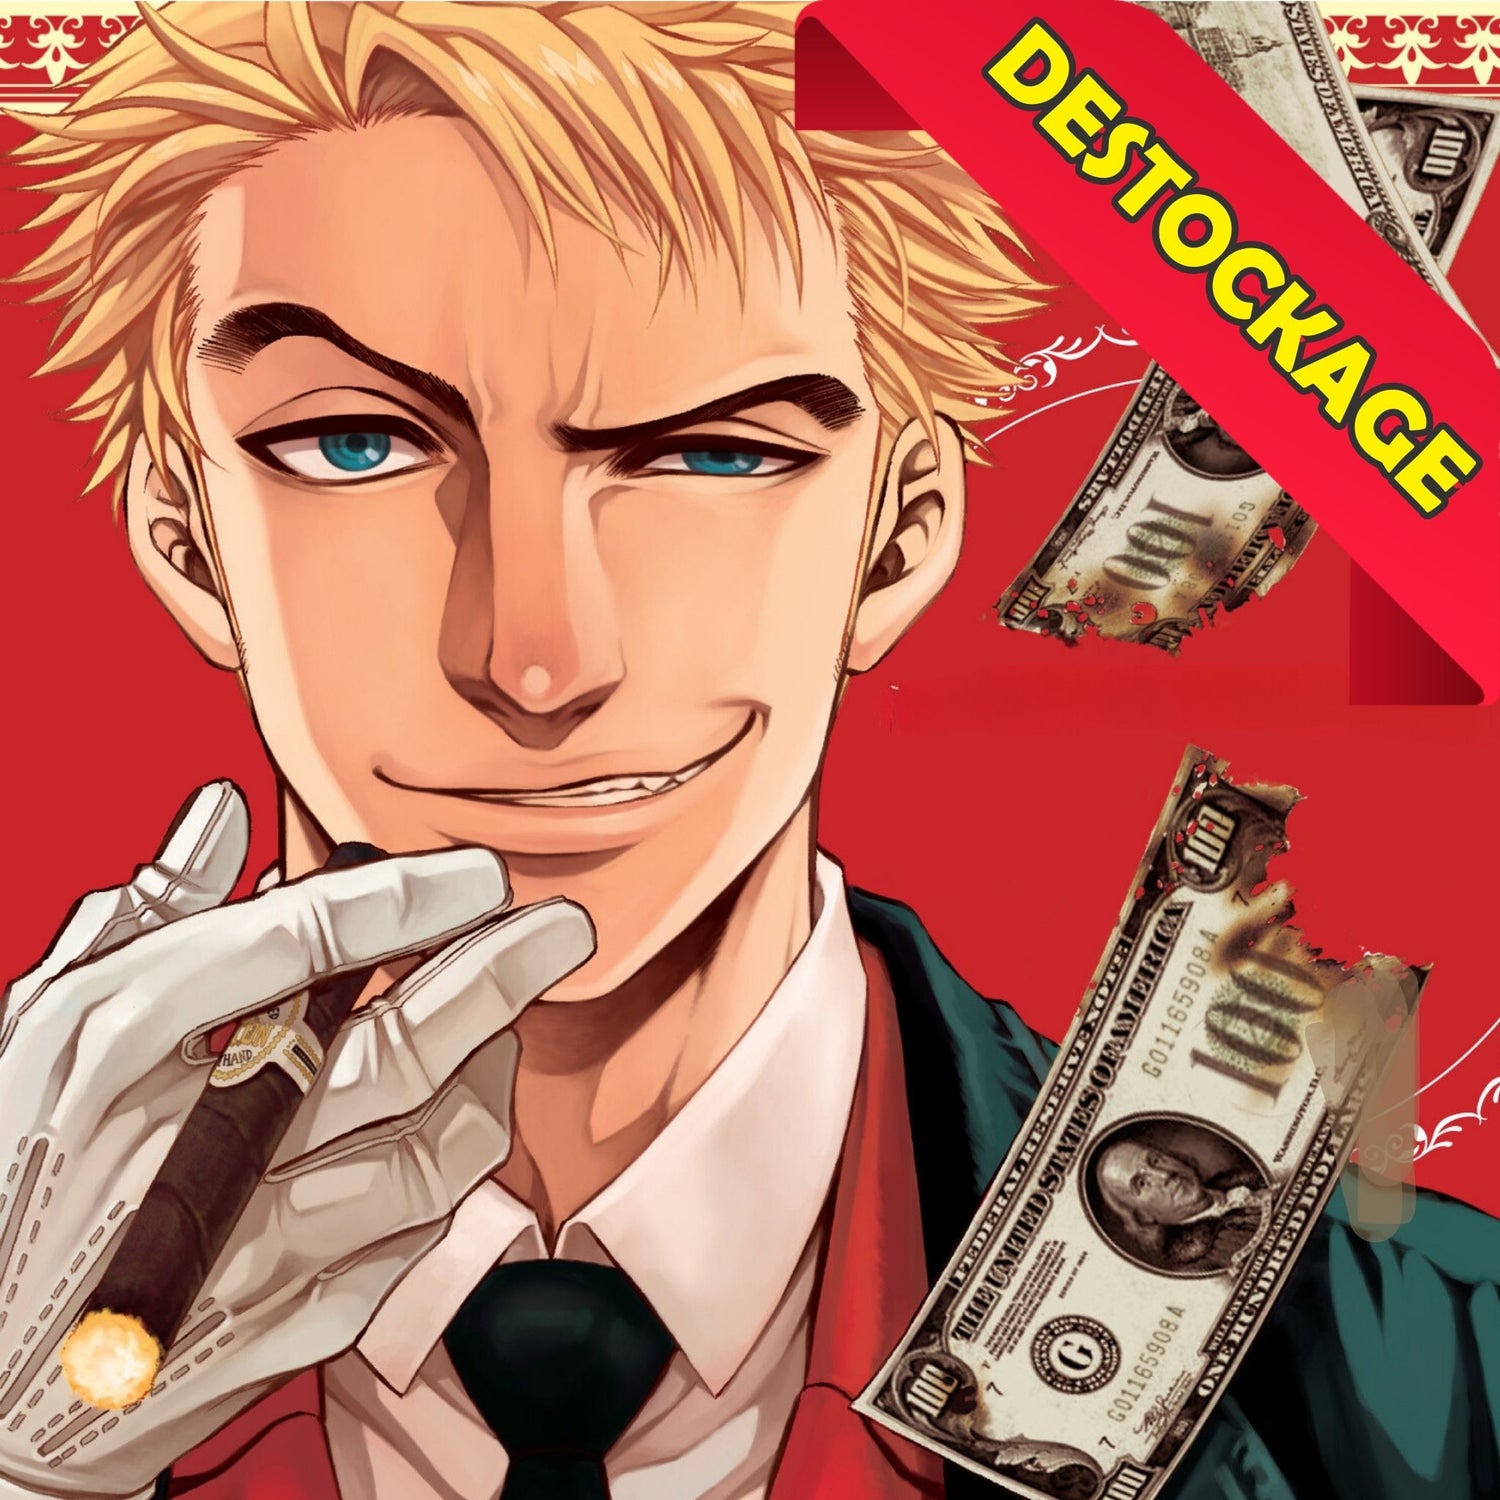 Manga Cash propose une grande variété de mangas en déstockage d'occasion de qualité à prix abordables